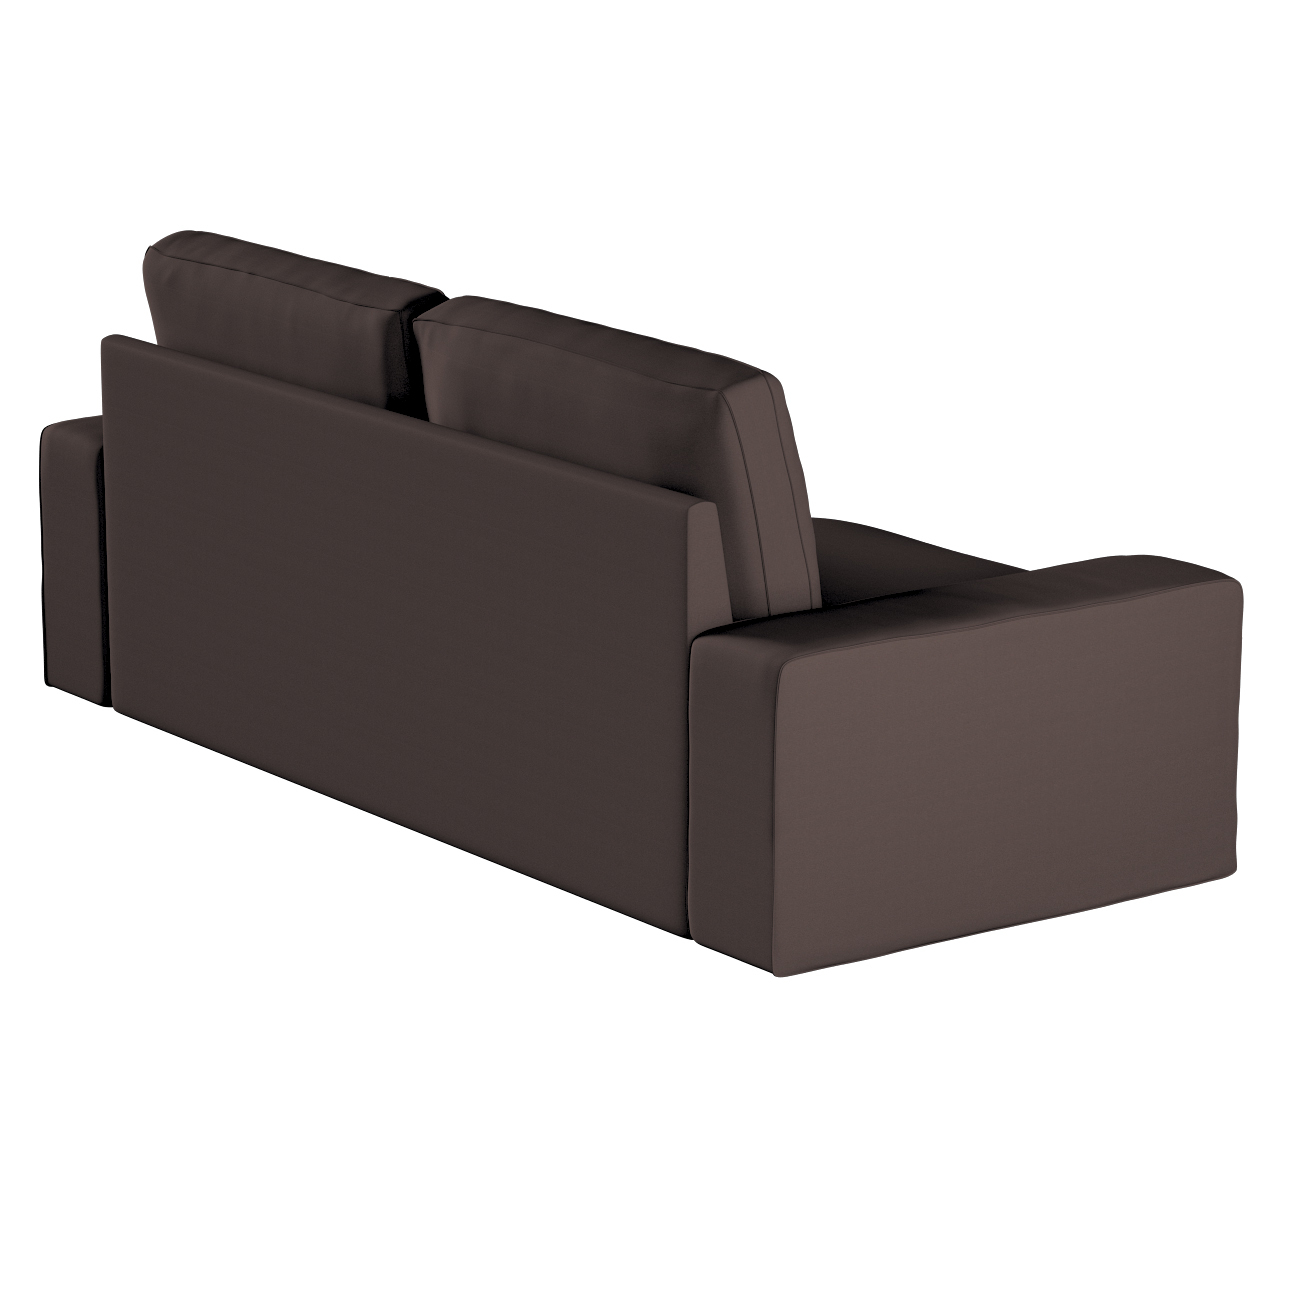 Bezug für Kivik 3-Sitzer Sofa, Kaffee, Bezug für Sofa Kivik 3-Sitzer, Cotto günstig online kaufen